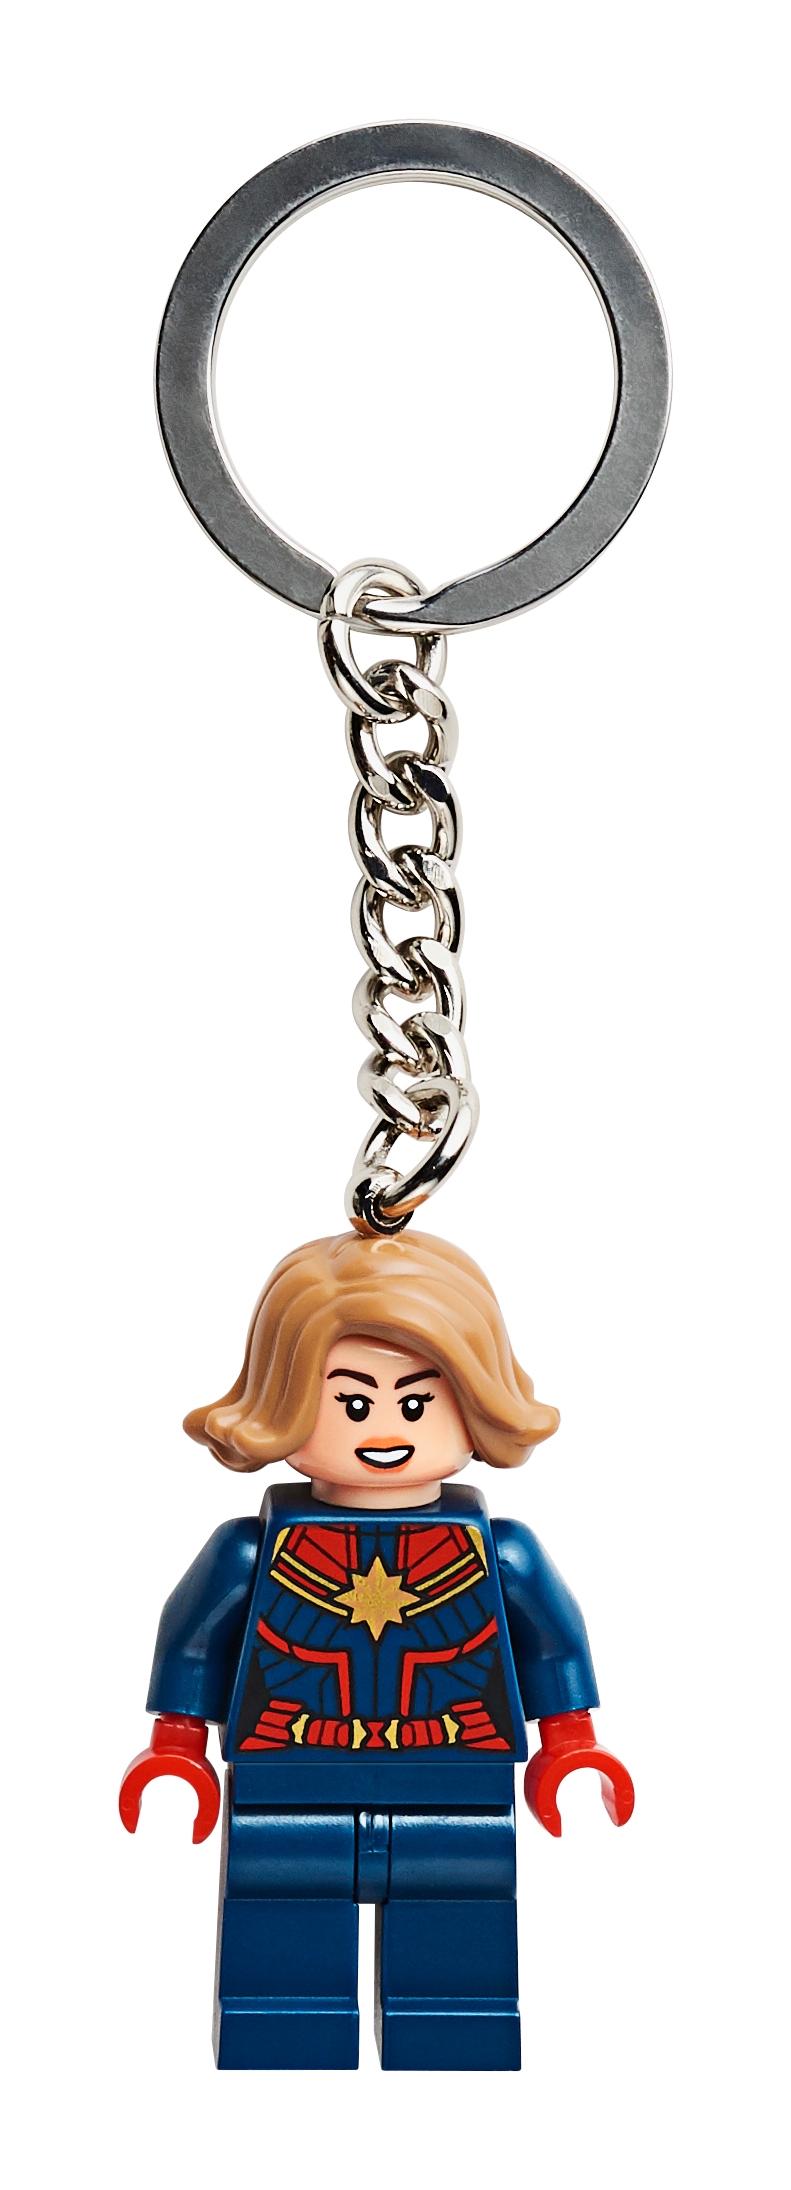 Bag or Backpack Charm 853794 Lego Corn Cob Guy Key Chain Minifigure Key Ring 